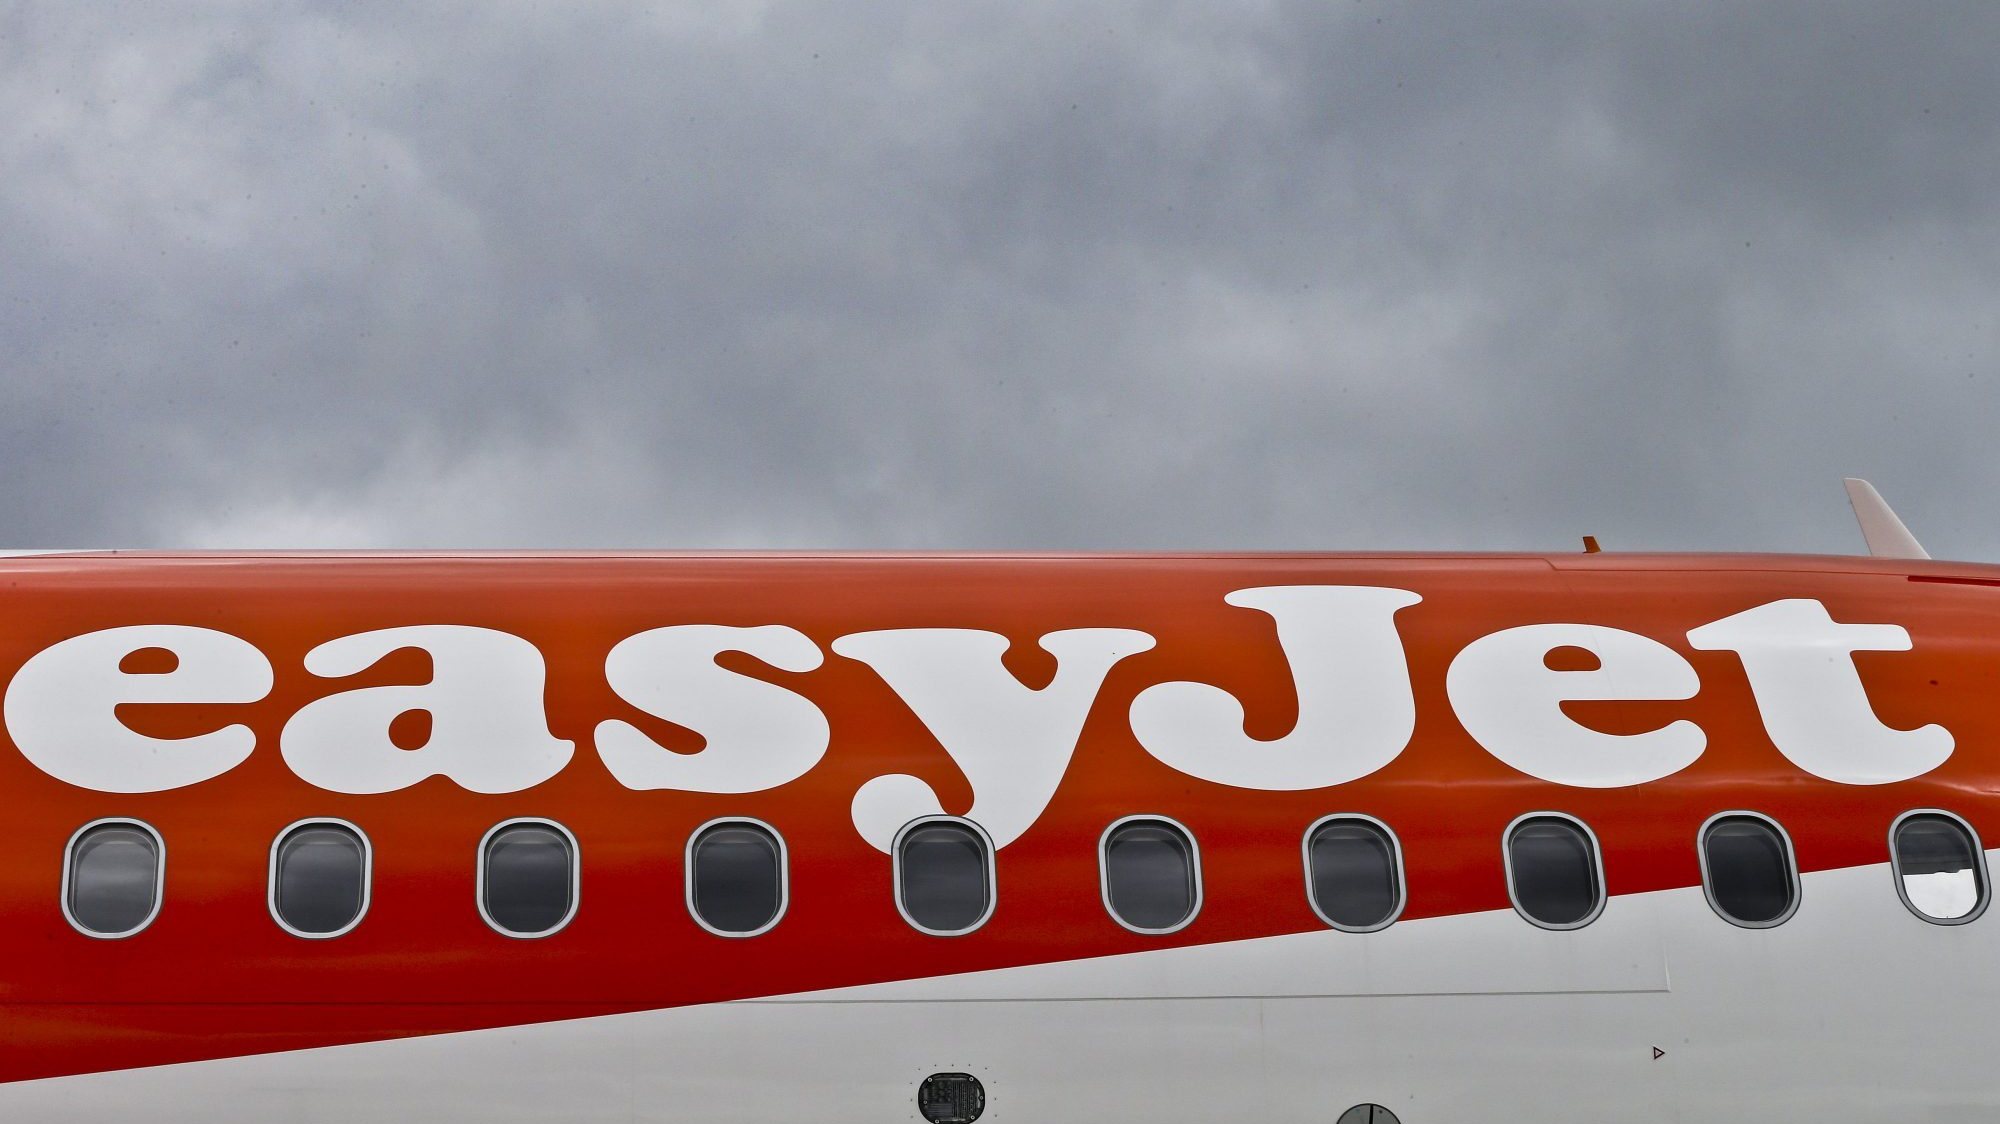 Para 2022, a easyJet espera operar em Portugal com mais 8% de capacidade face a 2019